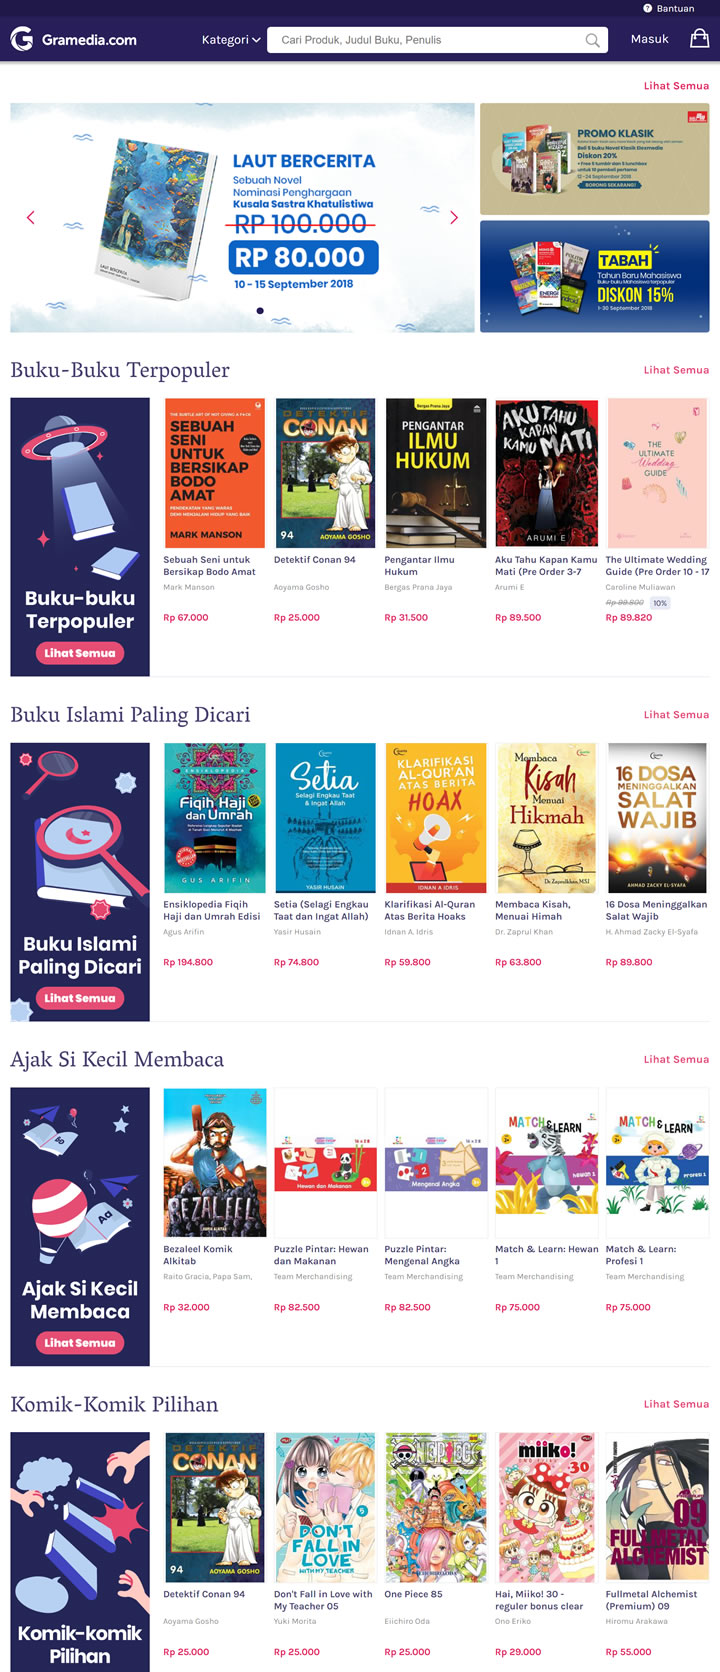 印尼最大的网上书店：Gramedia.com